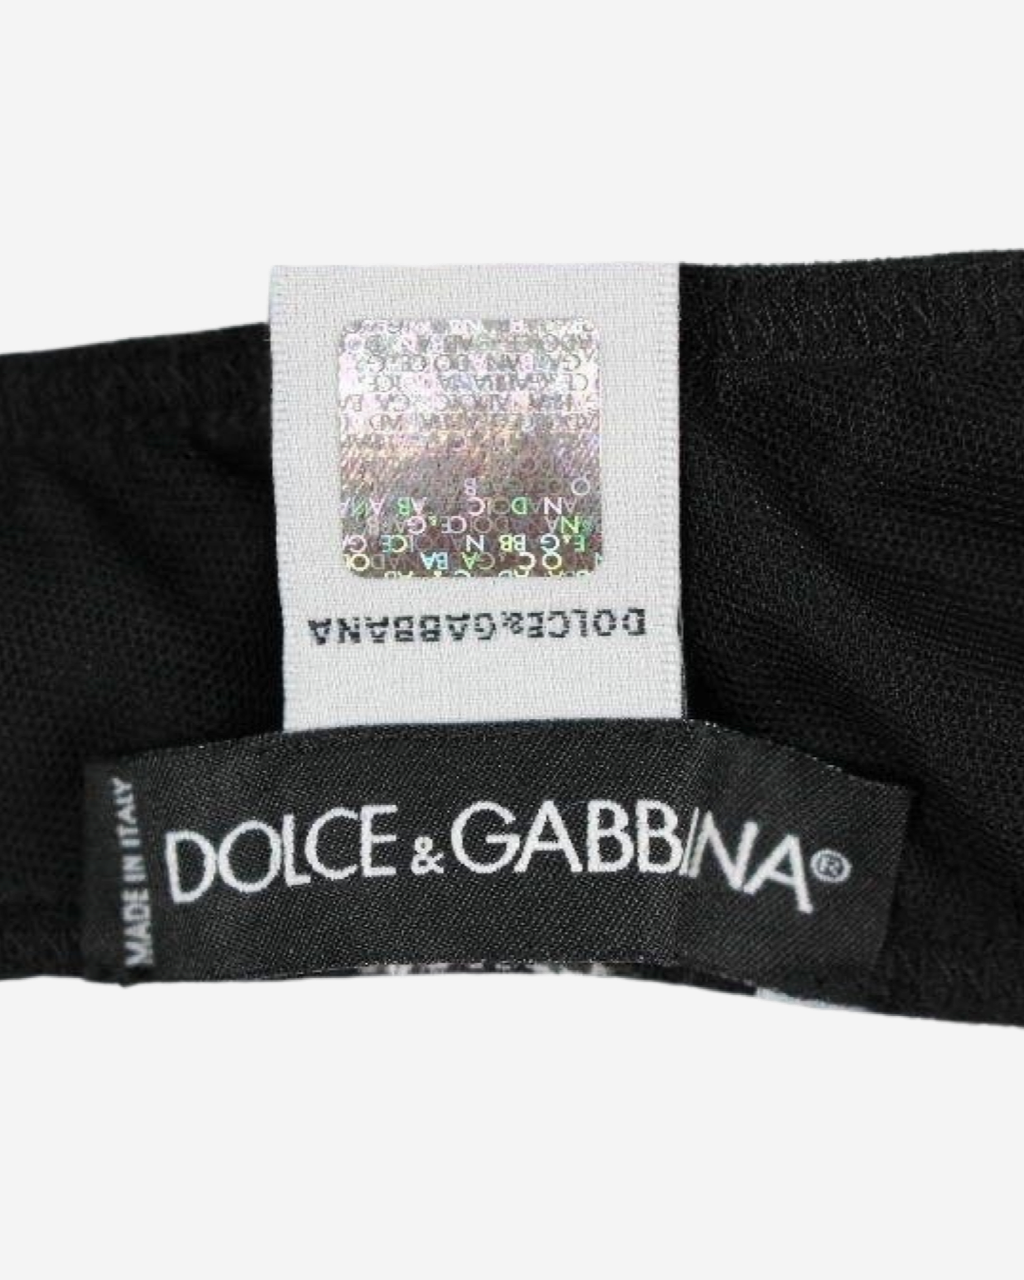 Top Dolce & Gabbana